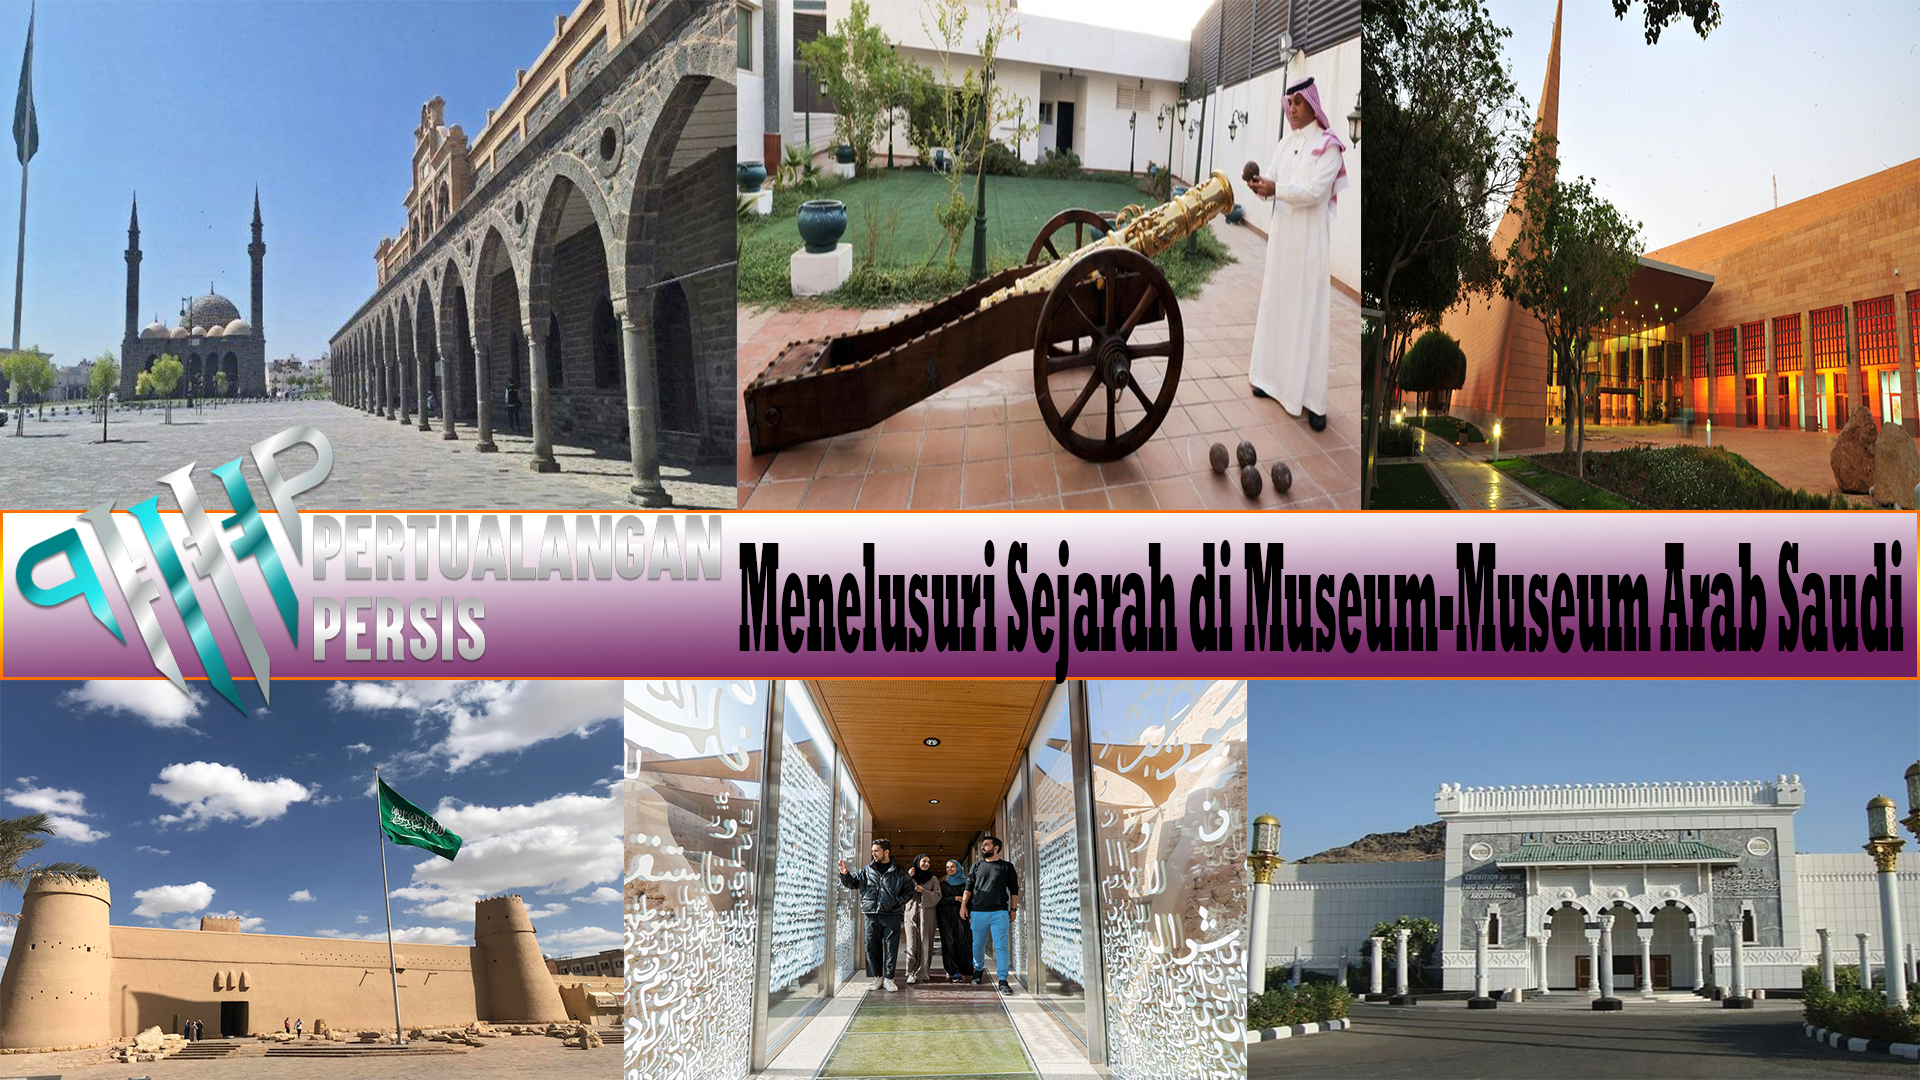 Menelusuri Sejarah di Museum-Museum Arab Saudi